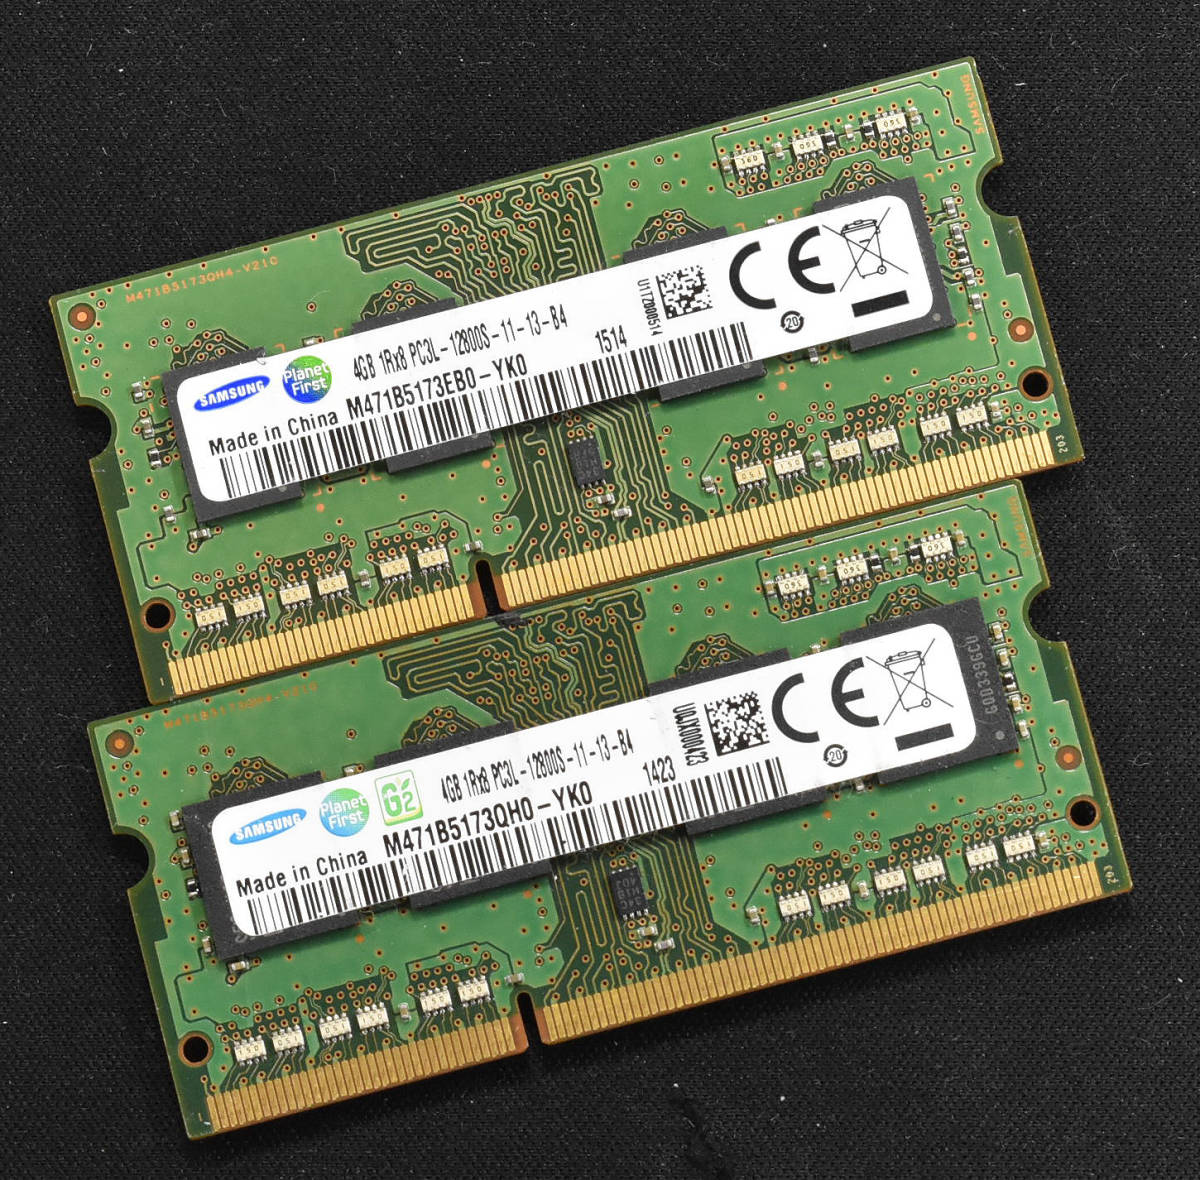 Samsung サムスン ノートパソコン用DDR3低電圧メモリー 4GB 1rx8pc3l-12800s-11-13-b4  M471B5173QH0-YK0 56％以上節約